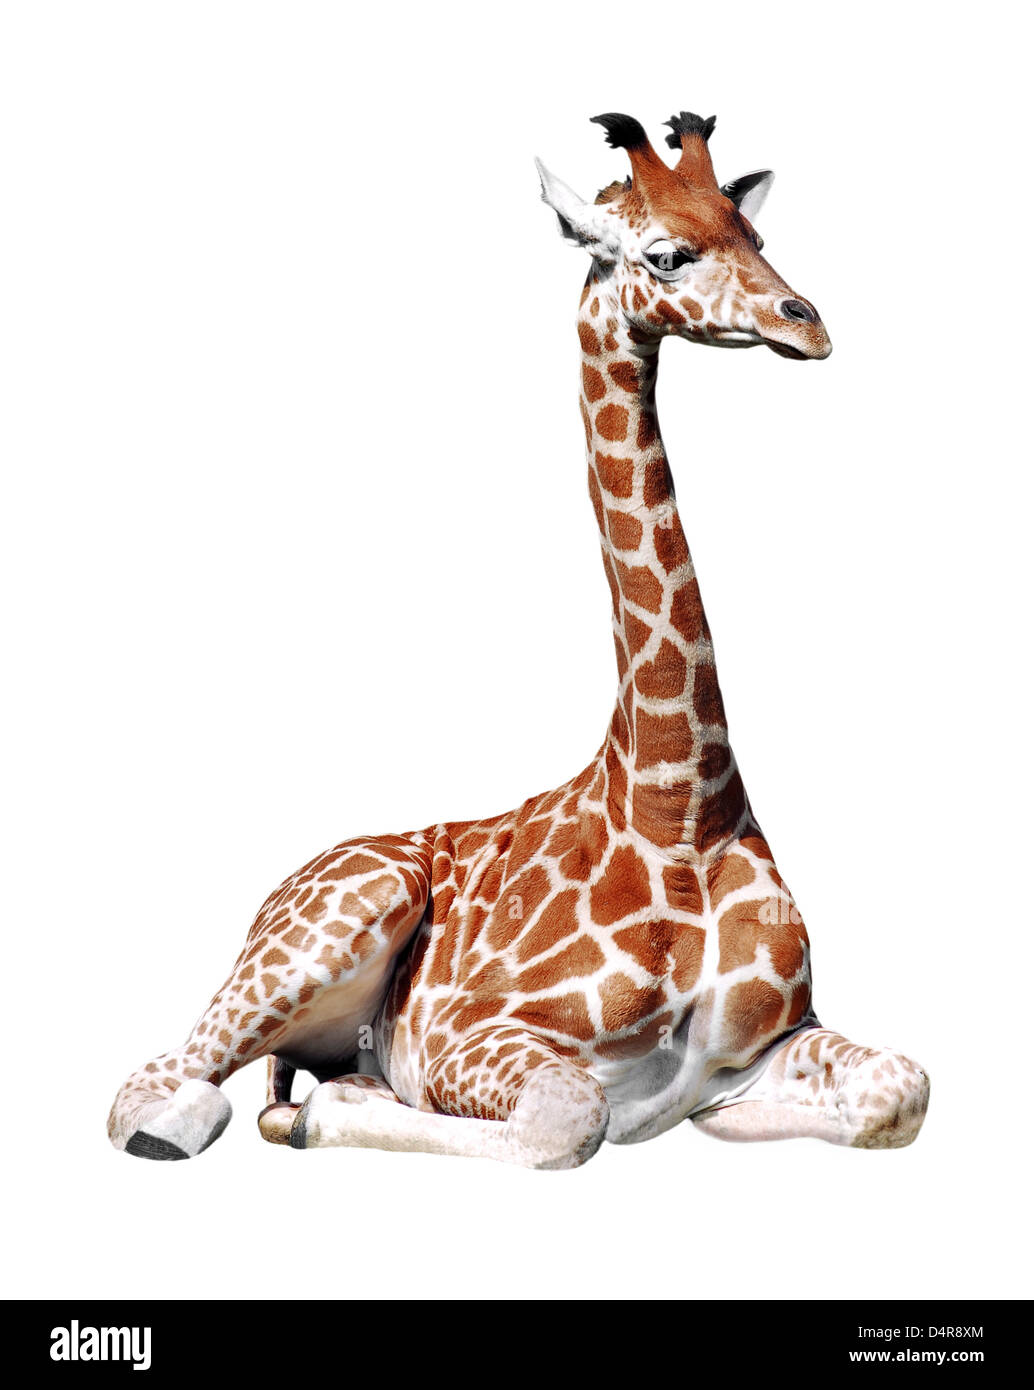 Girafe (Giraffa camelopardalis) coin isolé sur fond blanc Banque D'Images